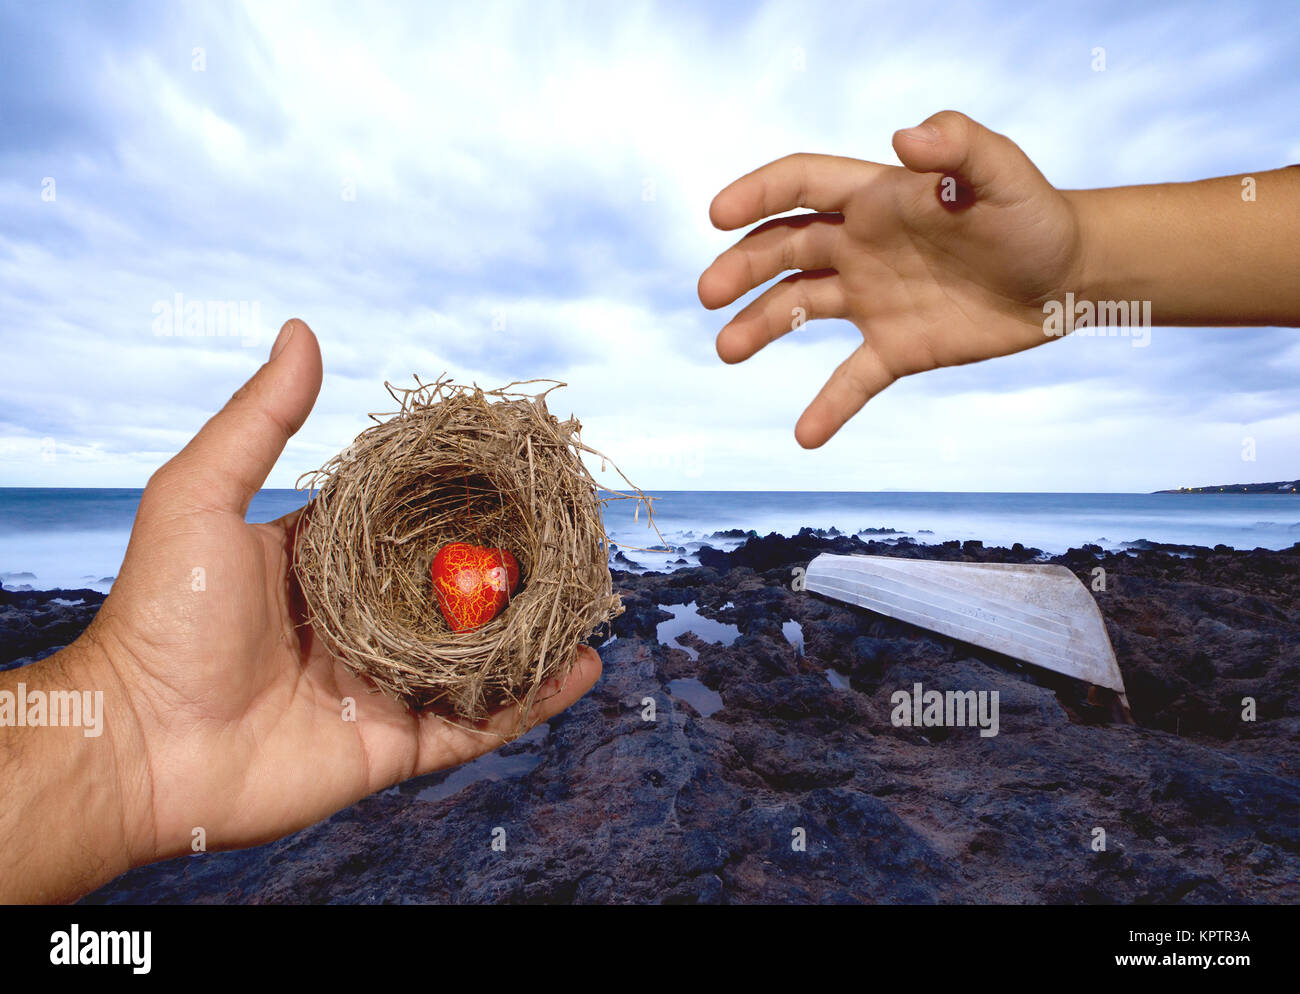 Des mains d'garder un nid naturel avec un cœur rouge à l'intérieur et un enfant essaie d'atteindre ce nid. Les liens familiaux, de protection, de sécurité, d'espoir, de solidarité. Banque D'Images